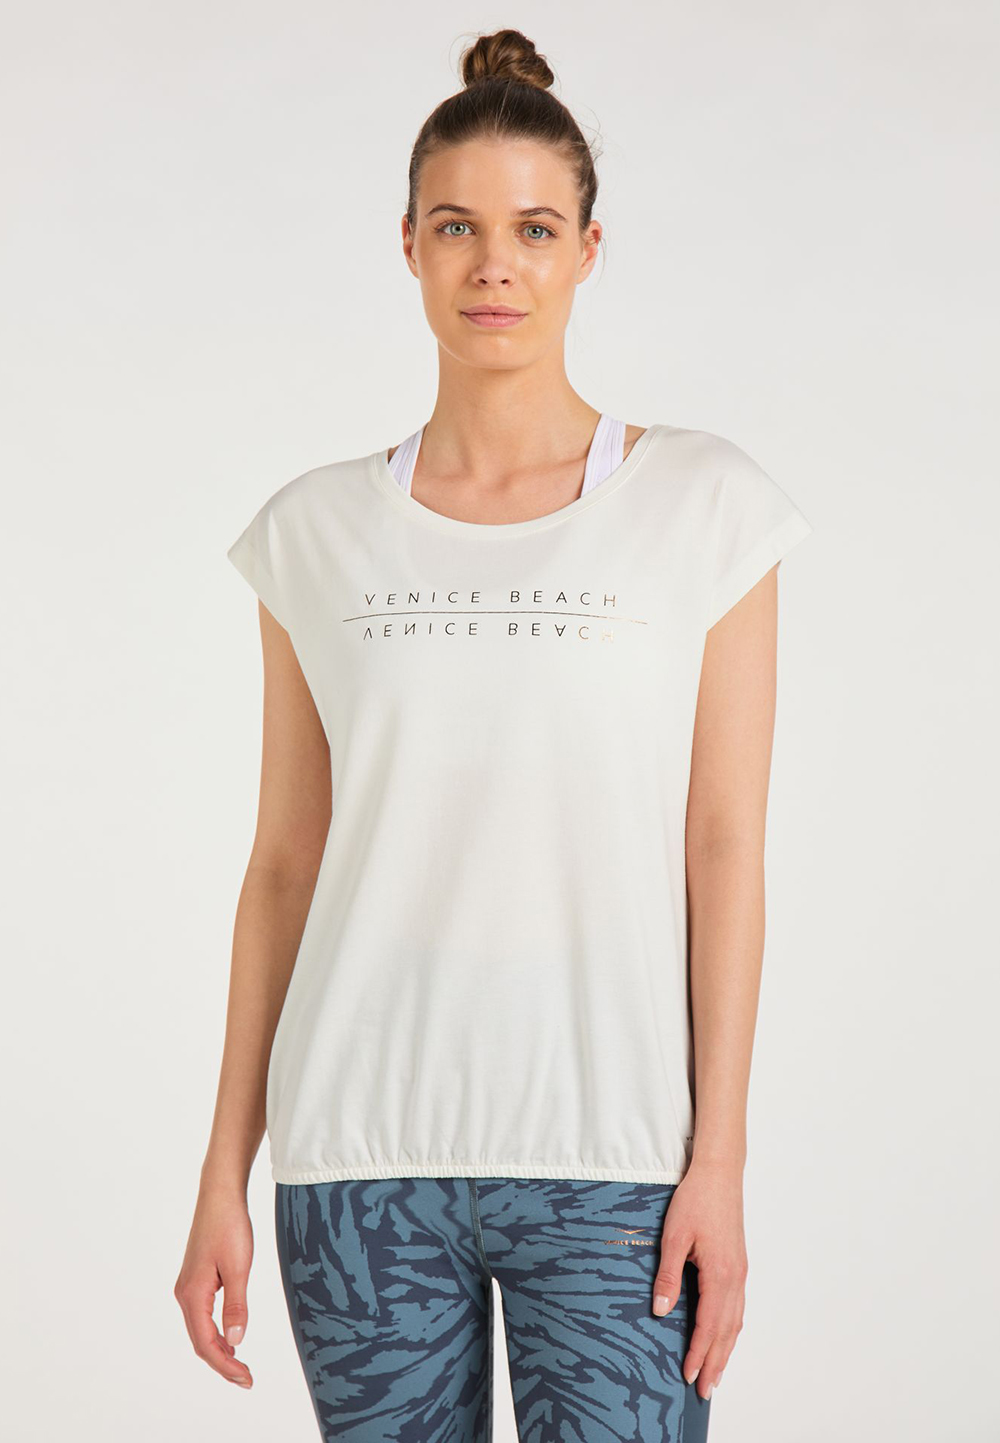 Venice Bach Damen WONDER T-Shirt Unser Topseller - Weiches T-Shirt 16186 weiss